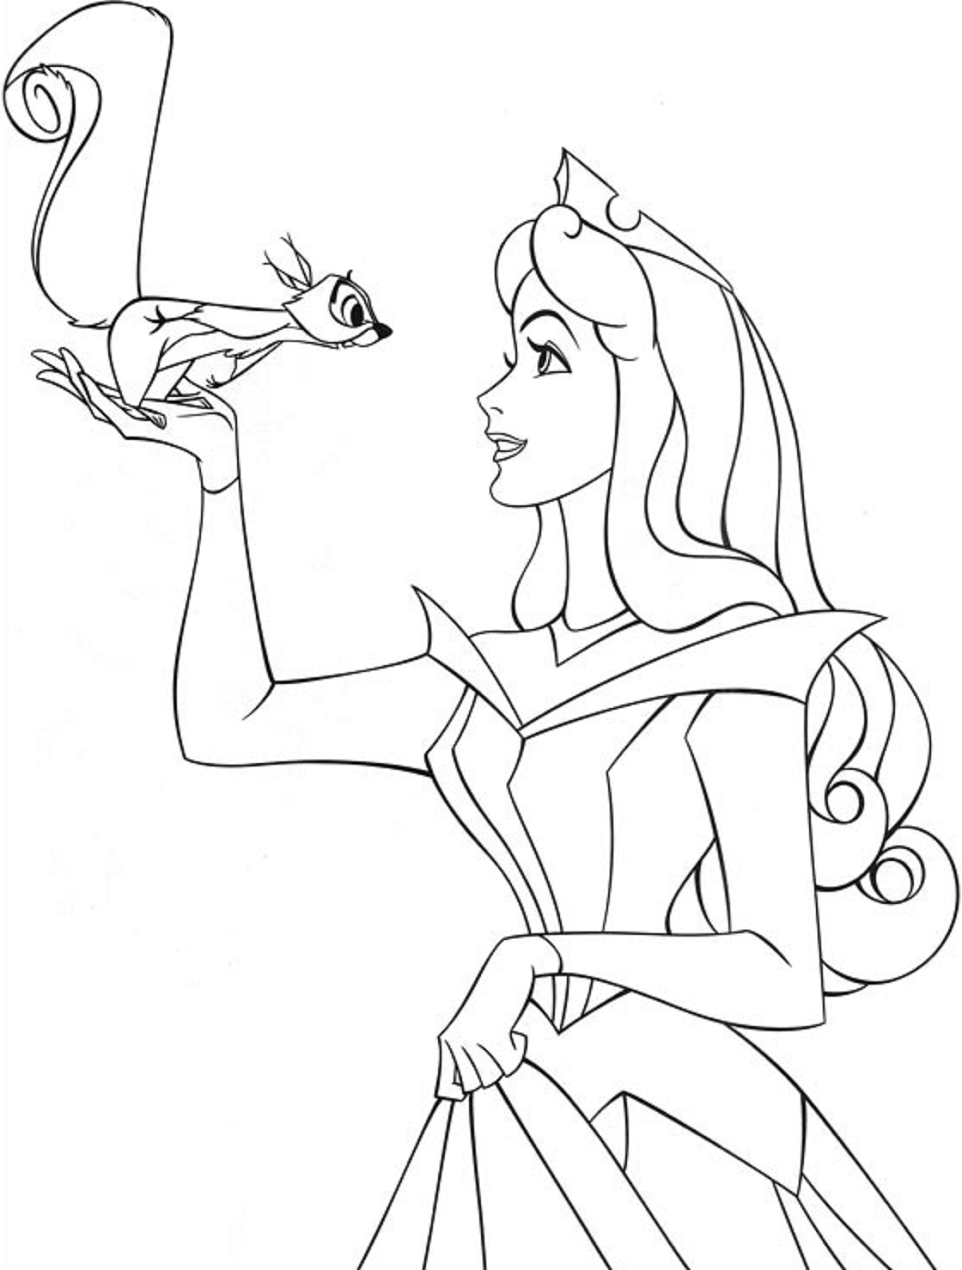 Um desenho animado de uma princesa da princesa aurora da disney.